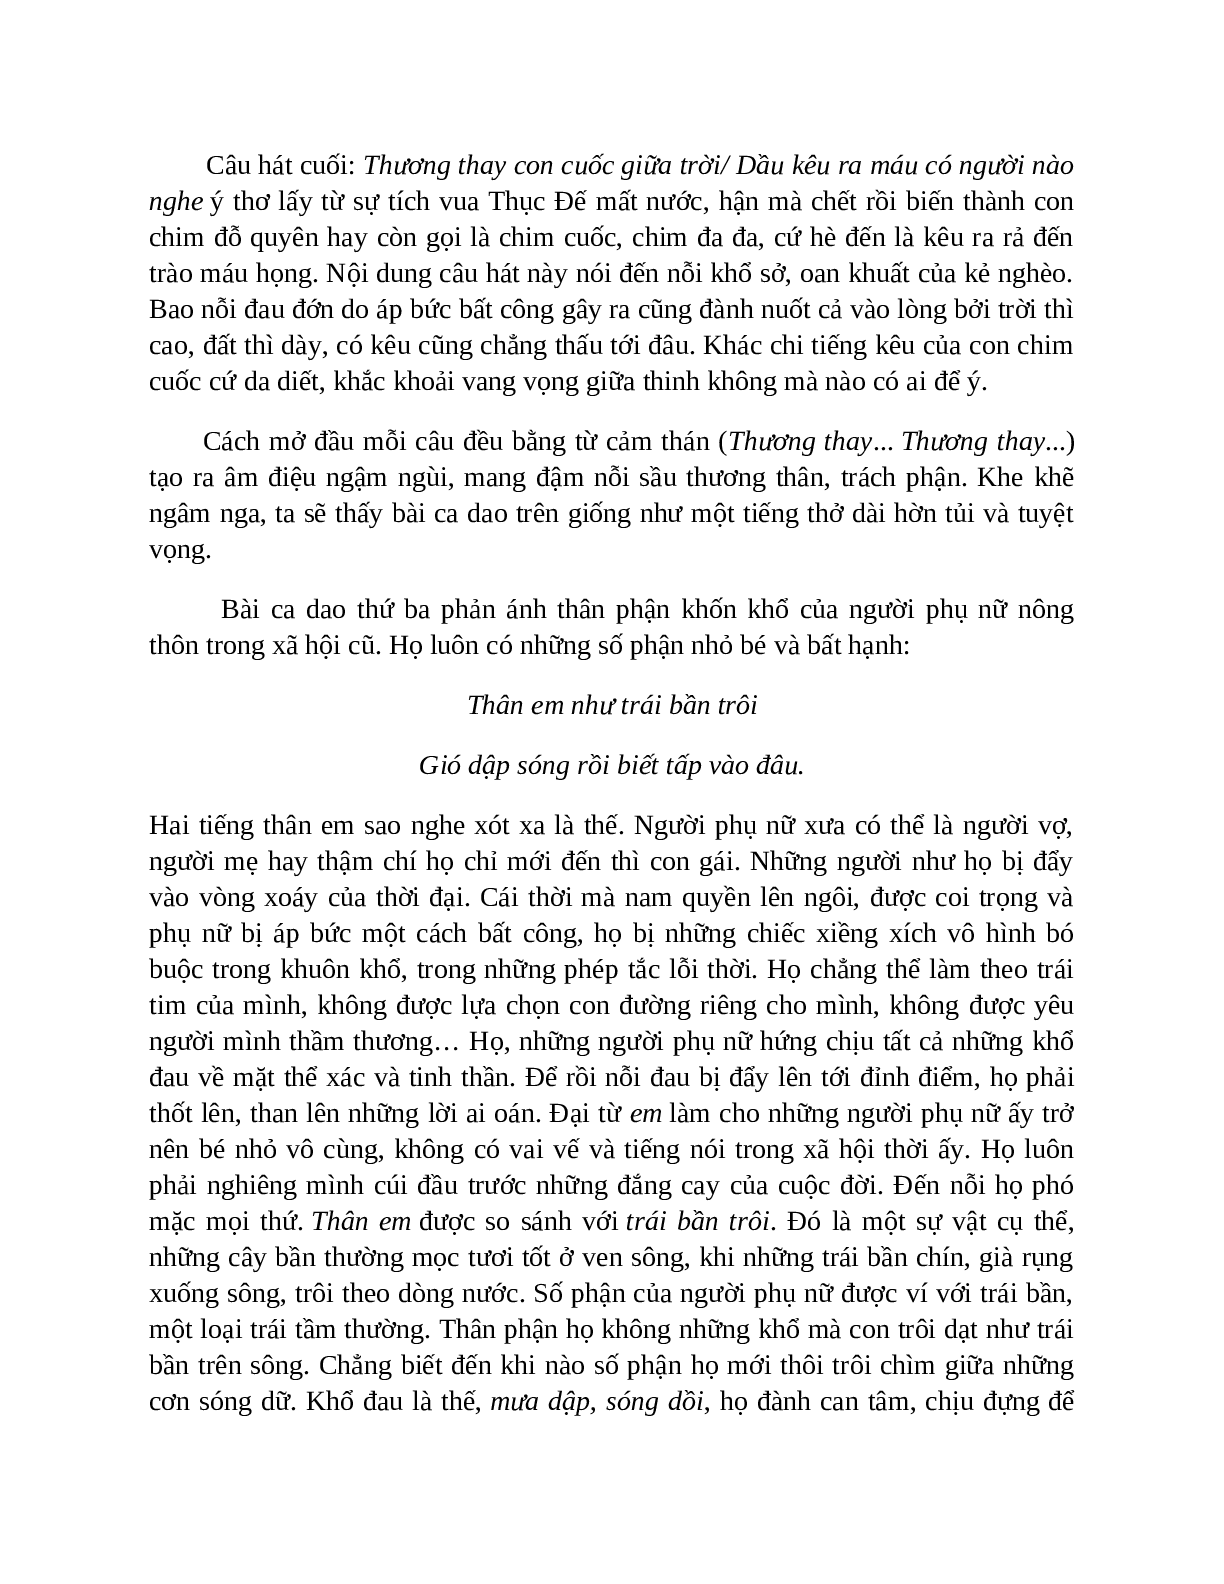 Sơ đồ tư duy bài Những câu hát than thân dễ nhớ, ngắn nhất - Ngữ văn lớp 7 (trang 6)